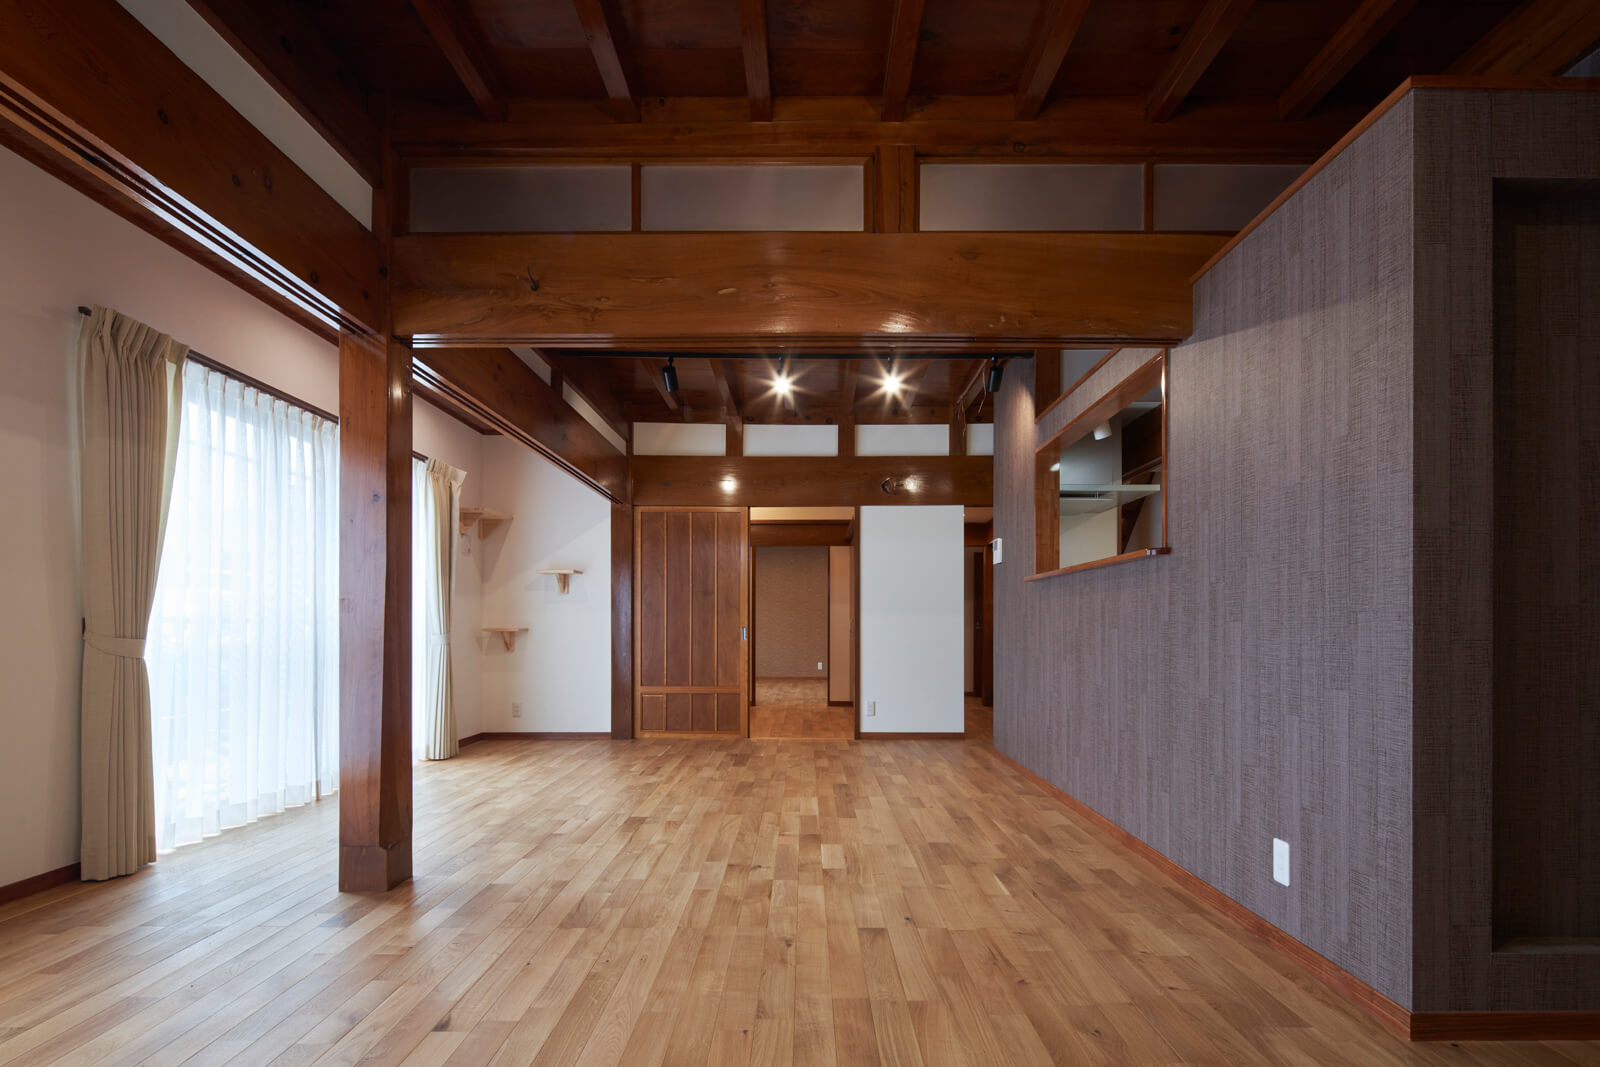 屋内は、既存の構造材や建具をできる限り生かしながら、これから長く快適に暮らせる空間になった